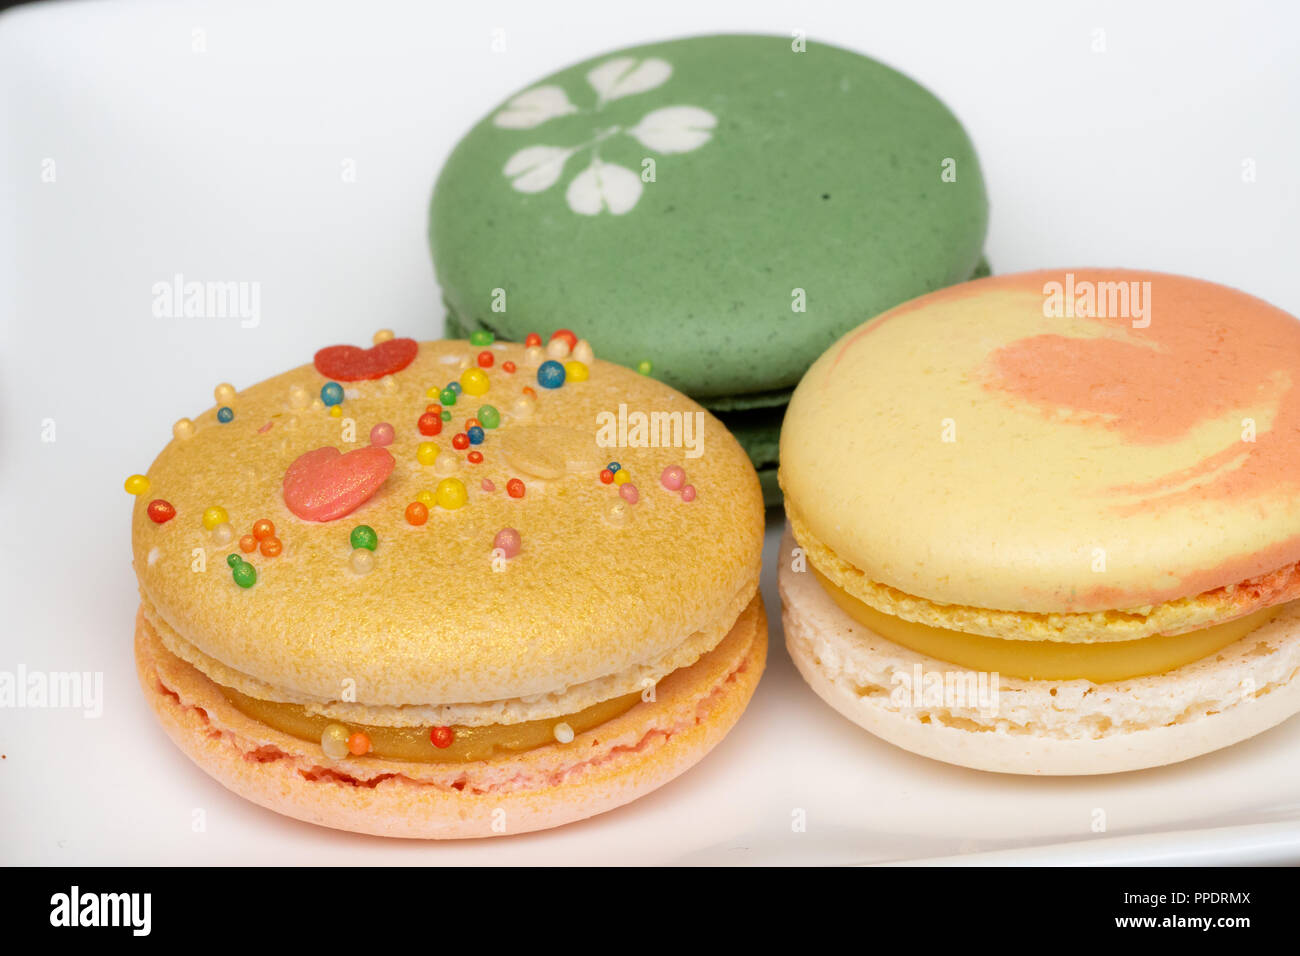 Hausgemachte sortierten Macarons schön mit bunten Herzen, grüner Tee und Gelb und Gold Farbe dekoriert Stockfoto